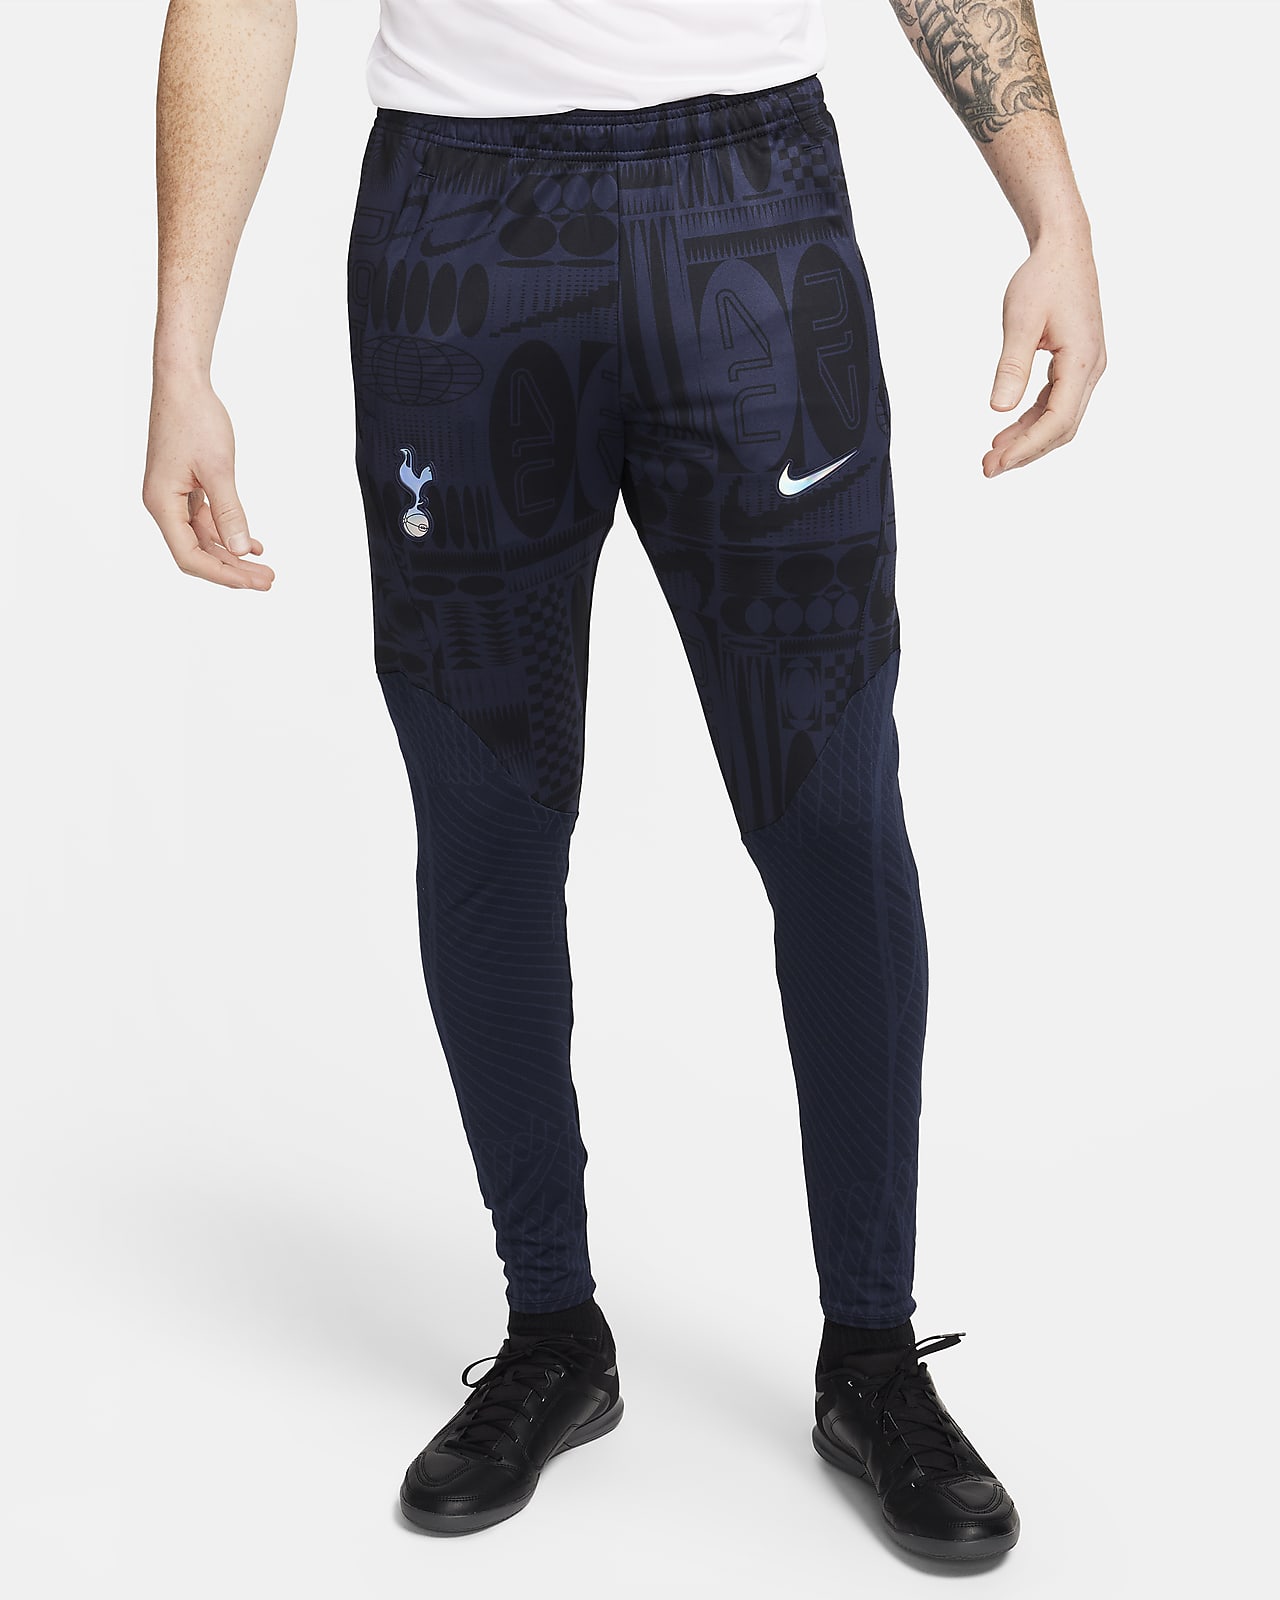 Ανδρικό ποδοσφαιρικό παντελόνι Nike Dri-FIT Τότεναμ Strike